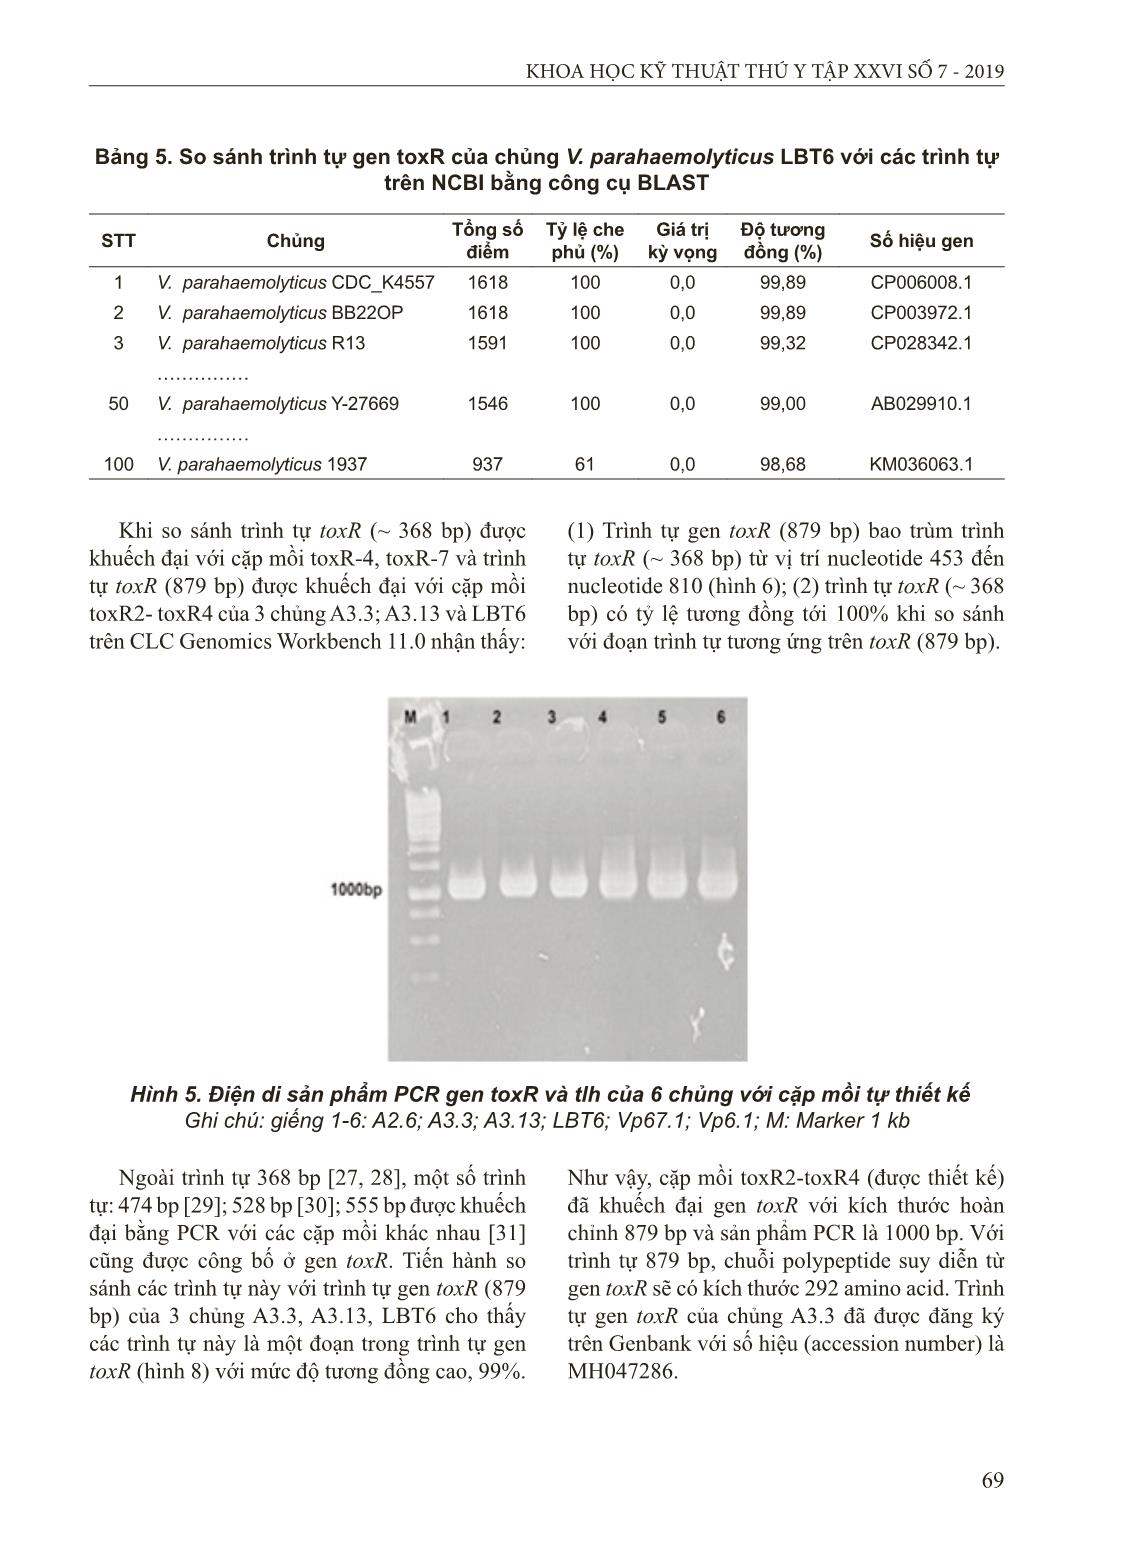 Đặc điểm sinh hóa và di truyền của chủng Vibrio parahaemolyticus gây bệnh hoại tử gan thận cho cá mú nuôi tại Cát Bà, Hải Phòng trang 8